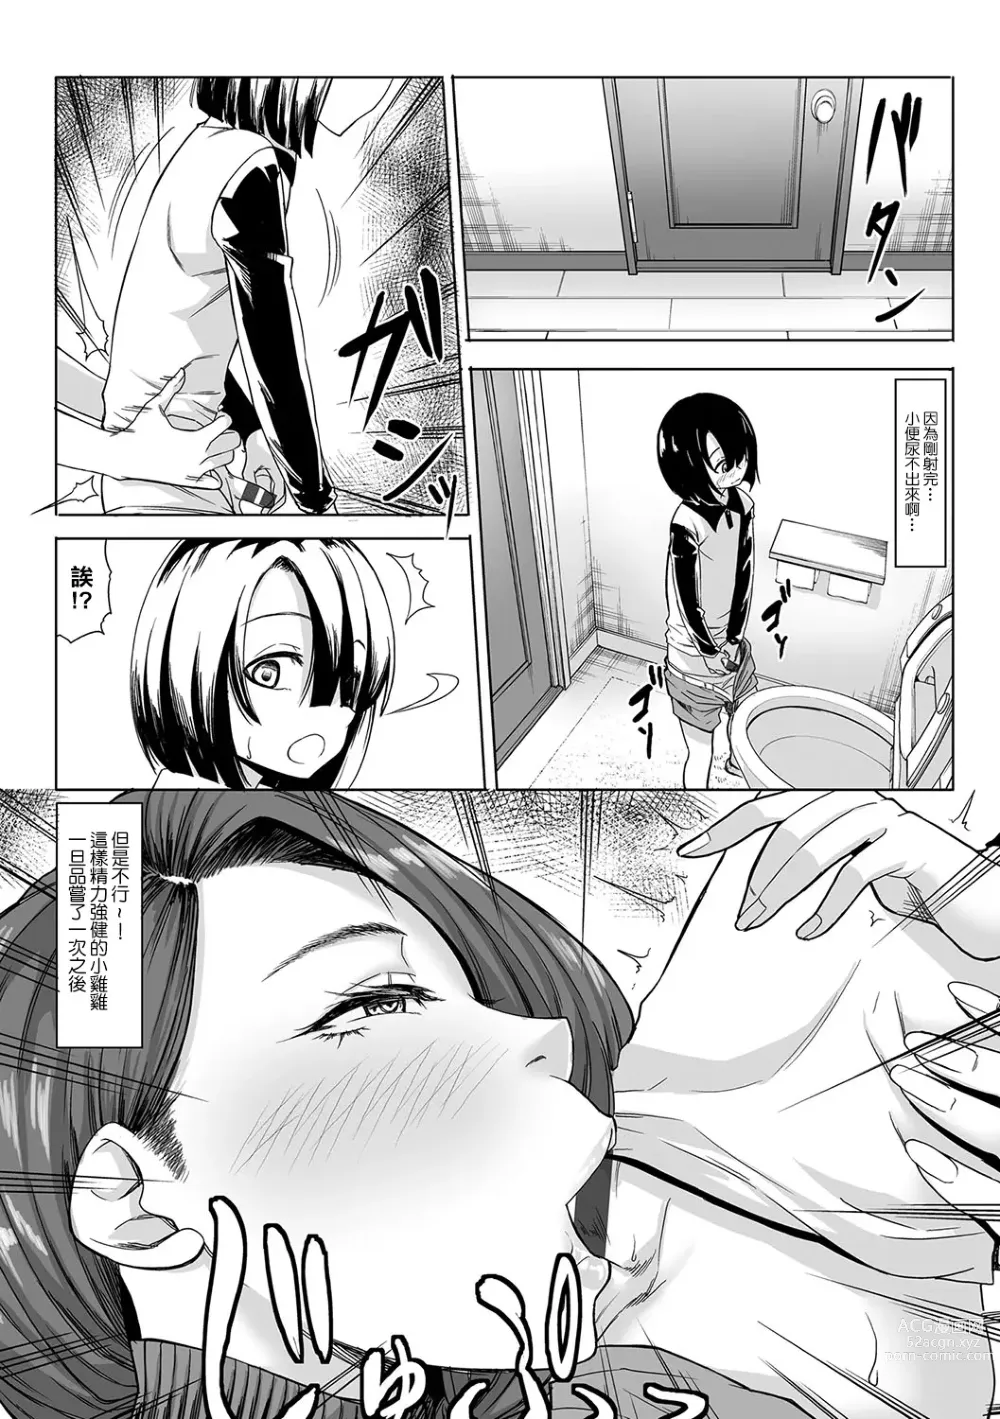 Page 10 of manga A Cup no Kanojo yori J Cup no Kuro Gal no Hou ga Yoi yo ne? After